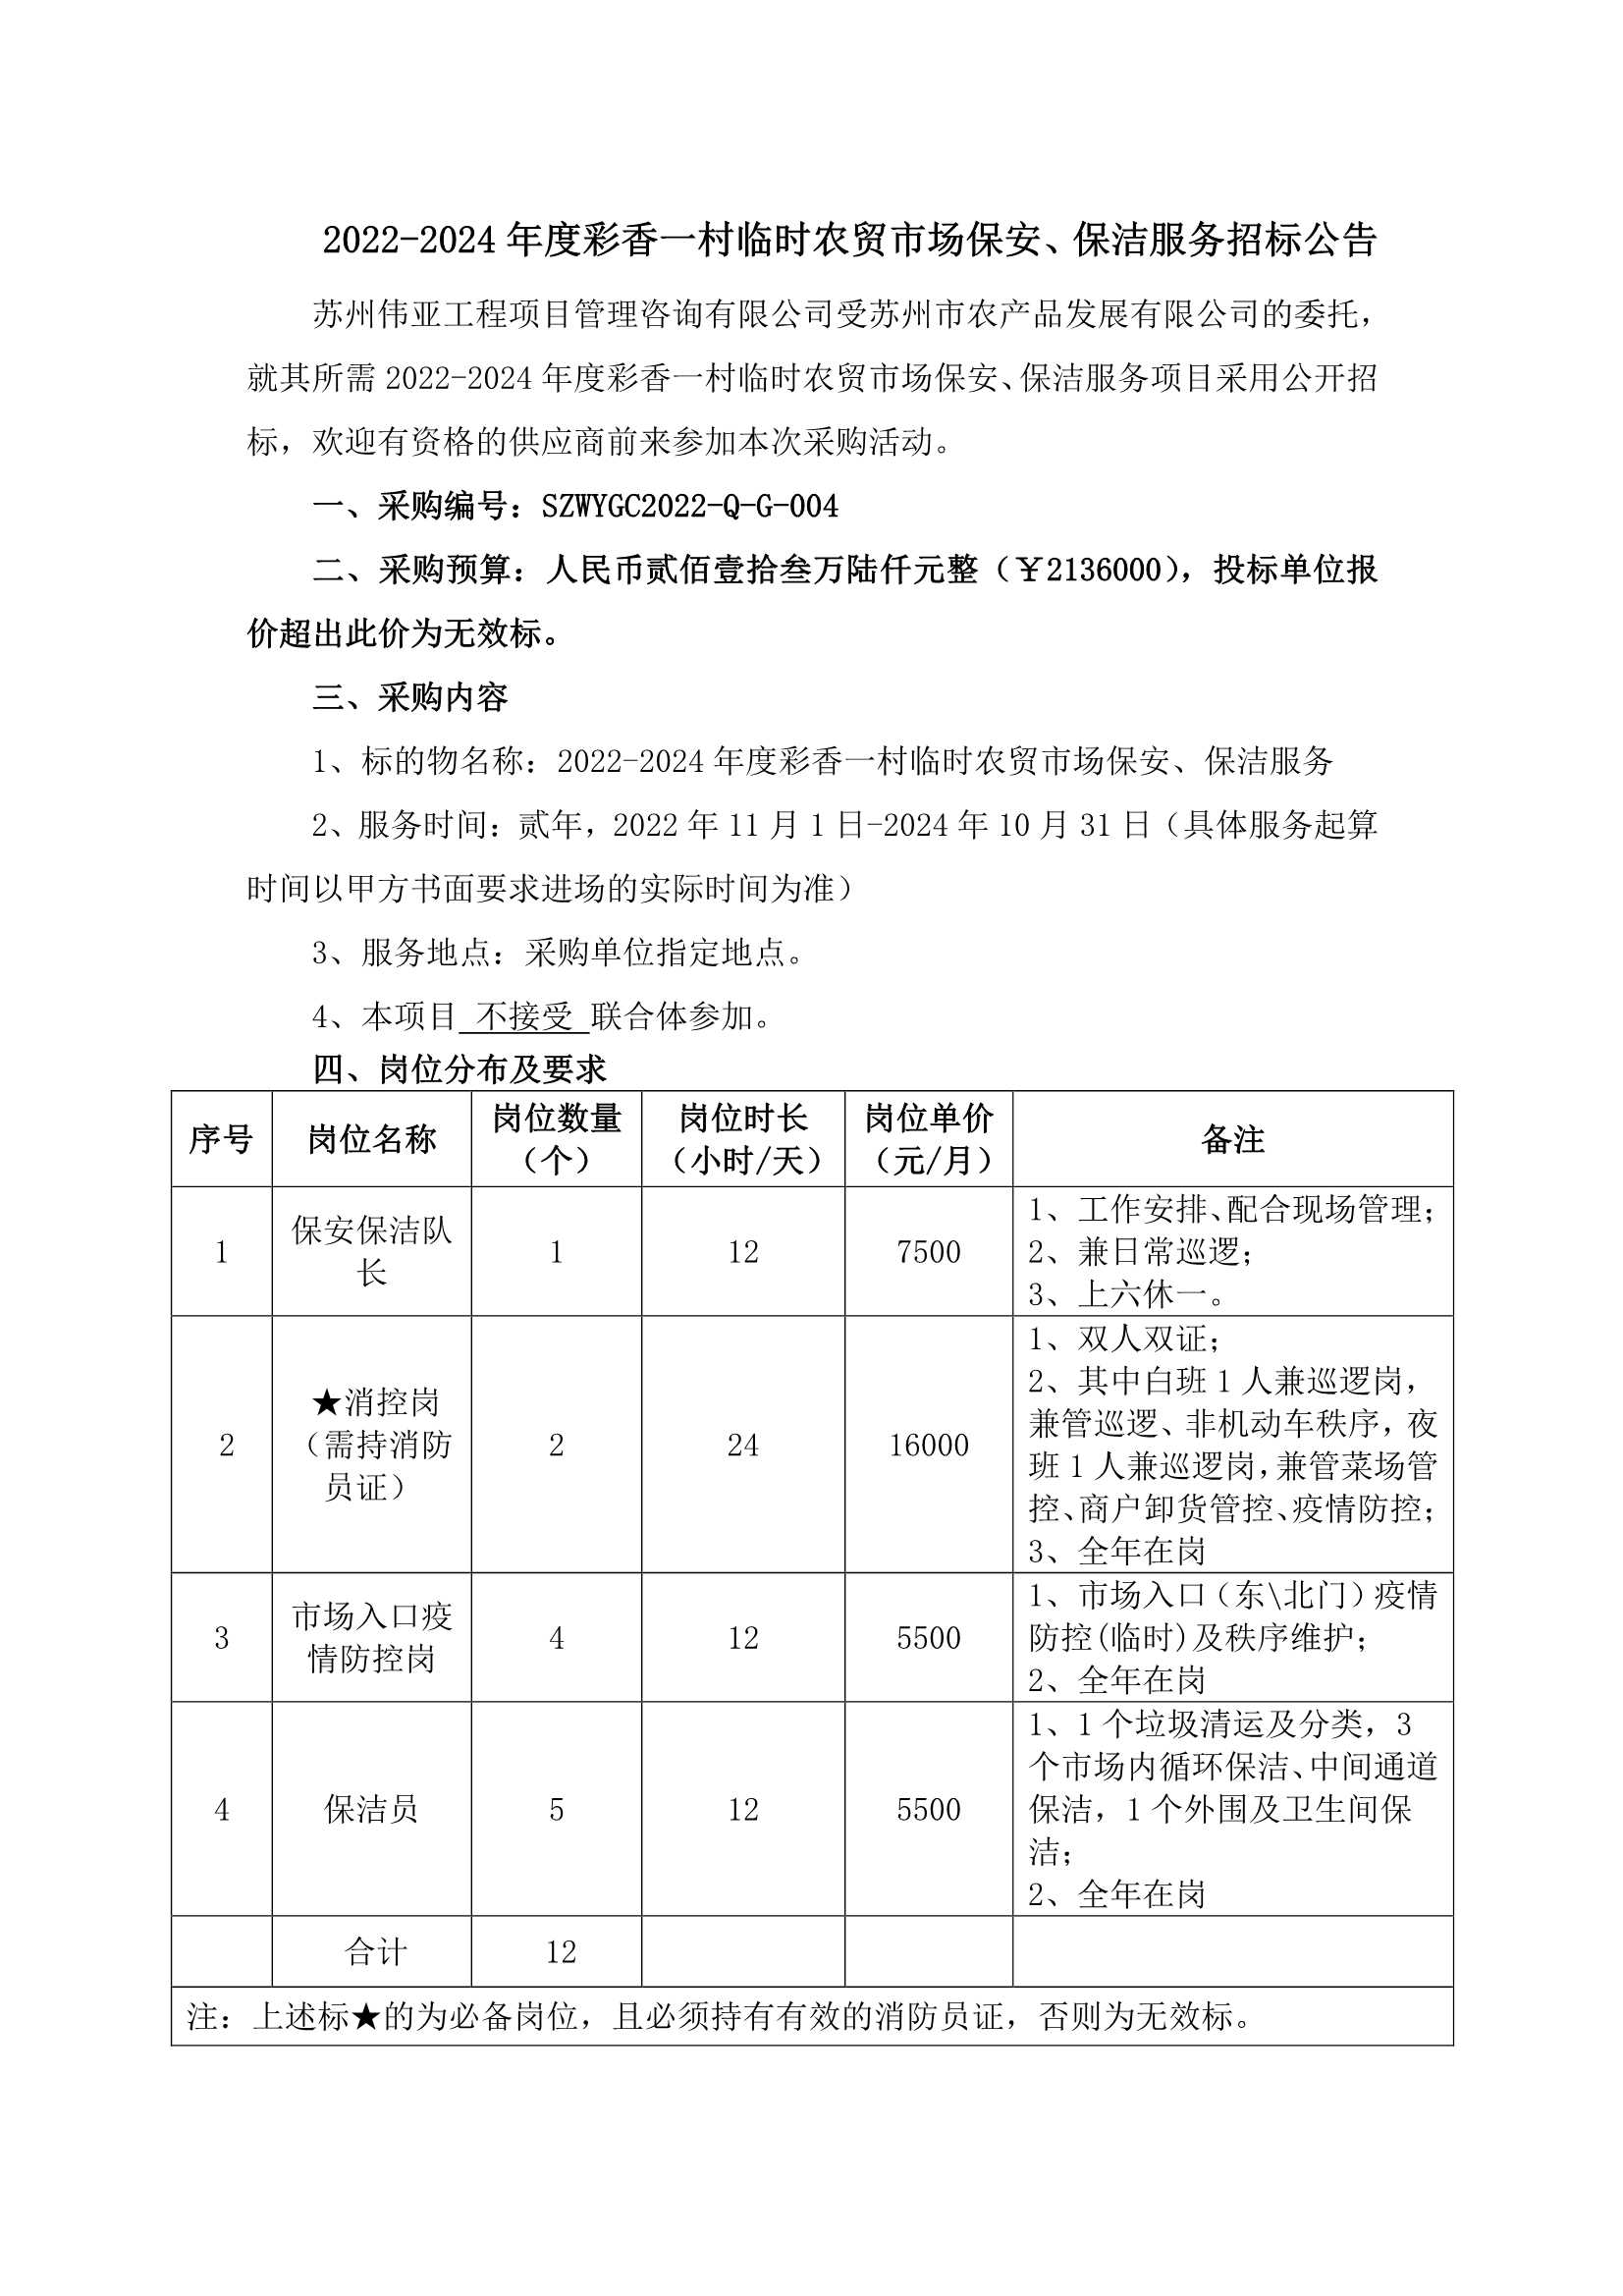 2022-2024年度彩香一村临时农贸市场保安、保洁服务招标公告_1.Png